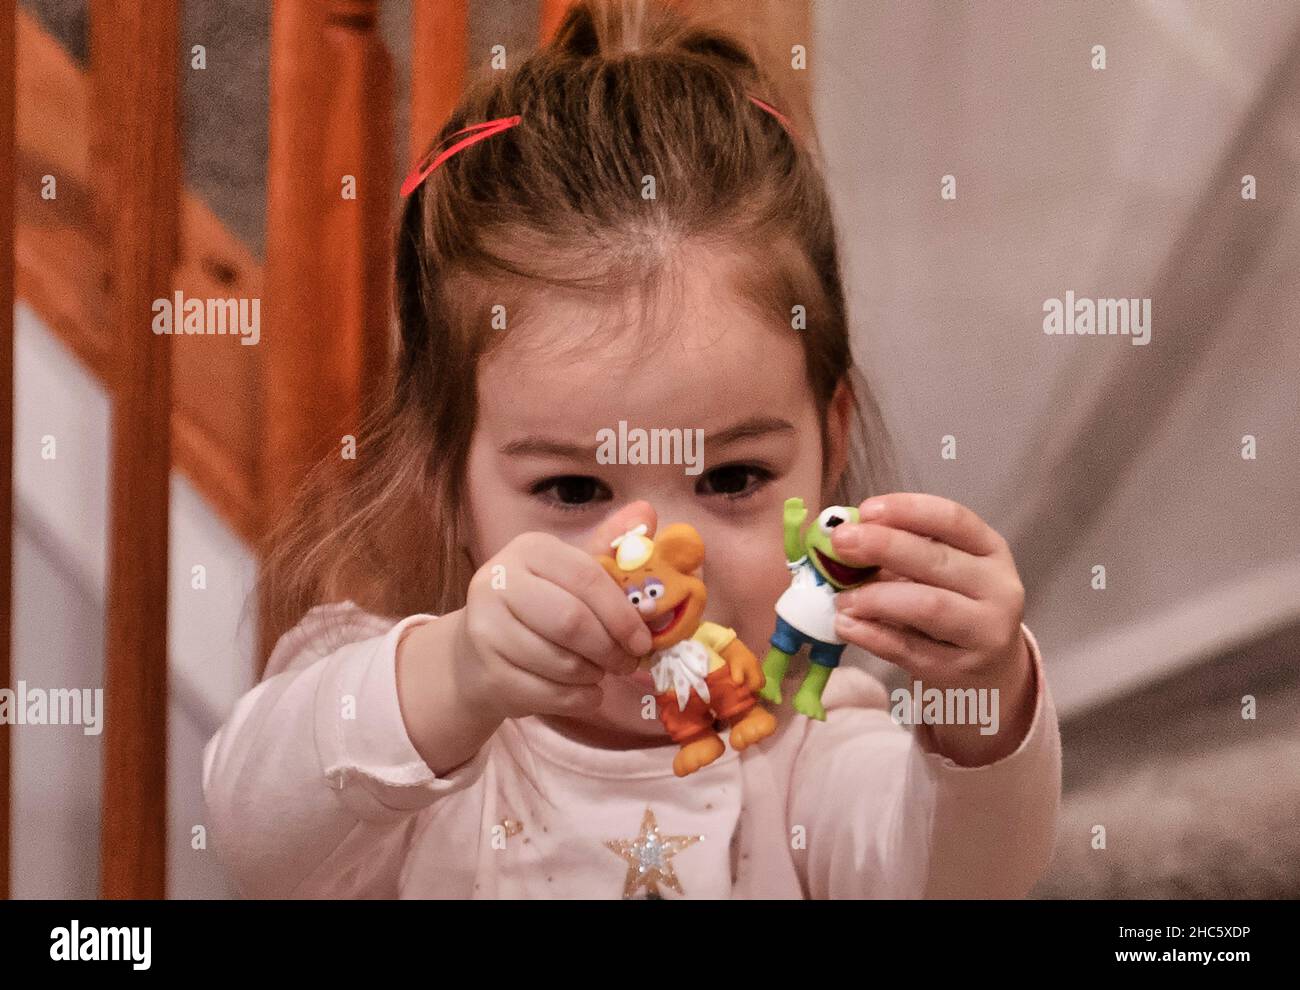 Giovane ragazza felice di mostrare i suoi nuovi giocattoli Foto Stock